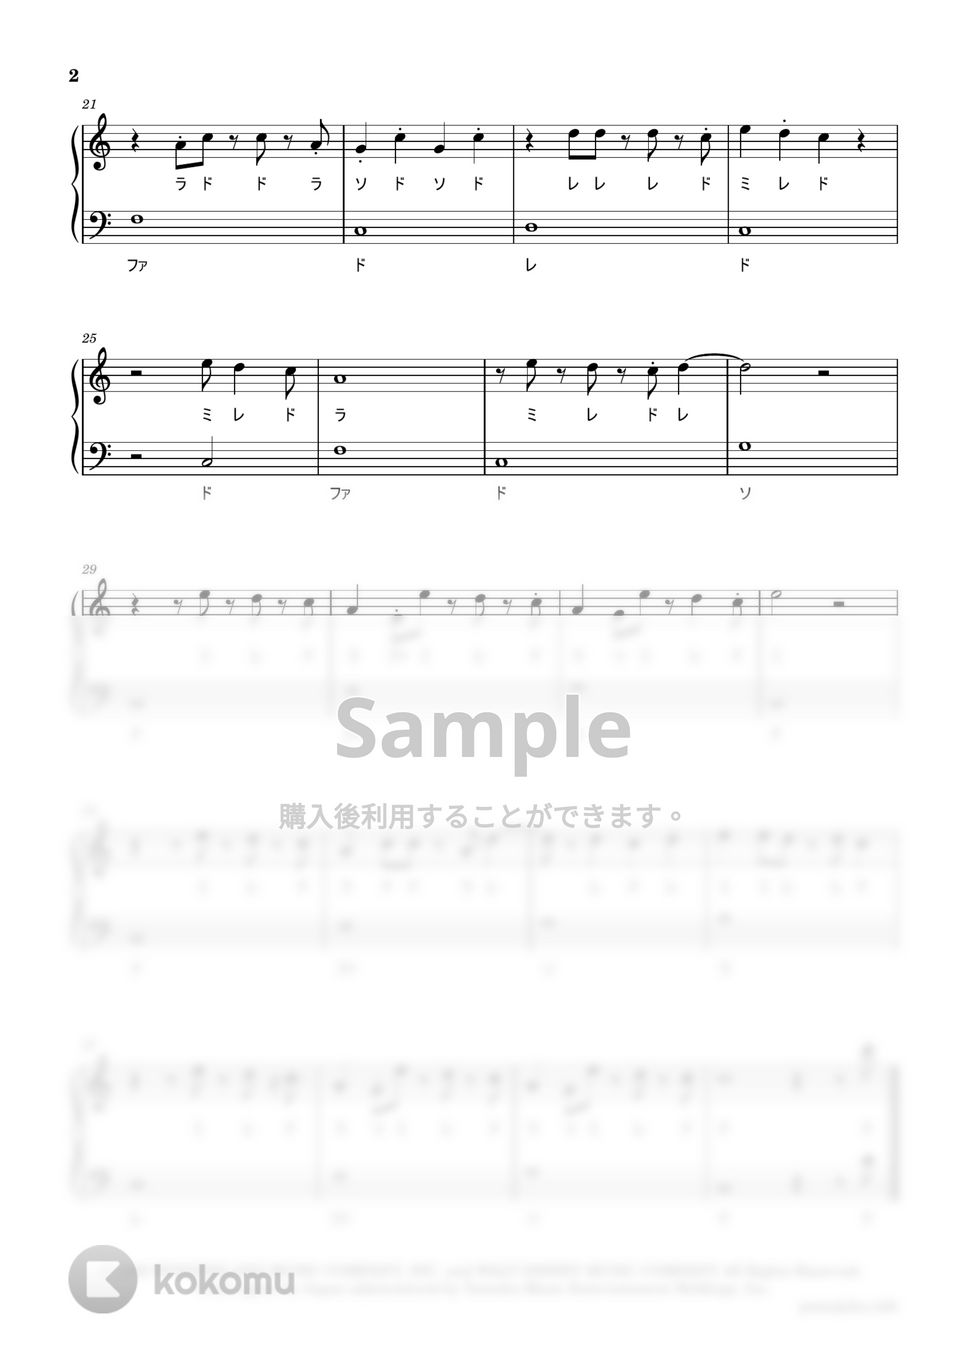 リトルマーメイド - アンダー・ザ・シー (ドレミ付き 簡単楽譜) by ピアノ塾